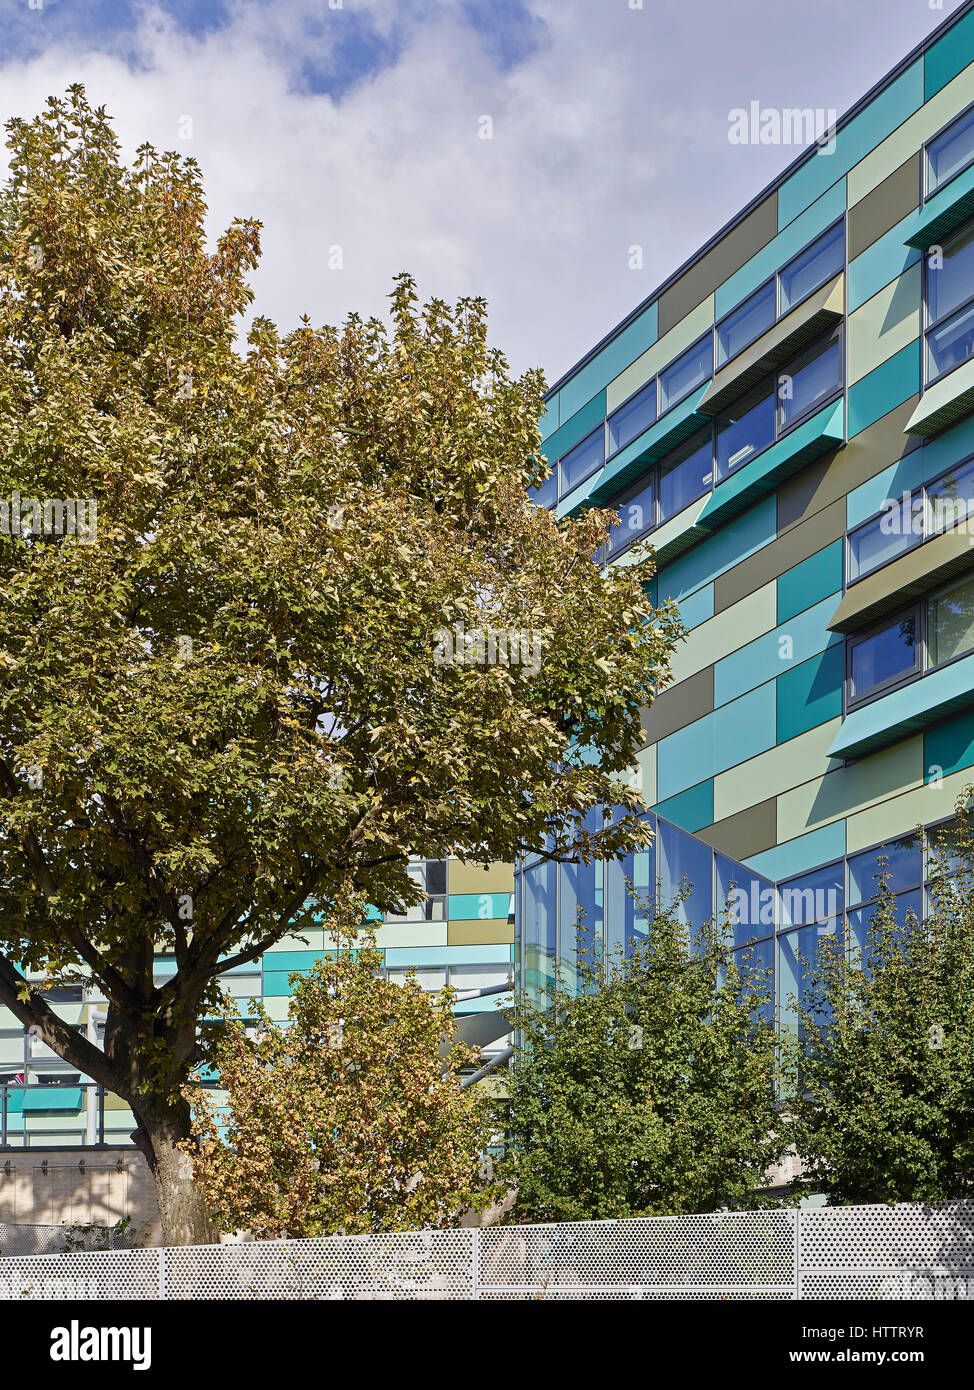 Abstrakte Detail der Fassade und Landschaftsgestaltung. Kensington Aldridge Academy, London, Vereinigtes Königreich. Architekt: Studio E Architekten, 2016. Stockfoto